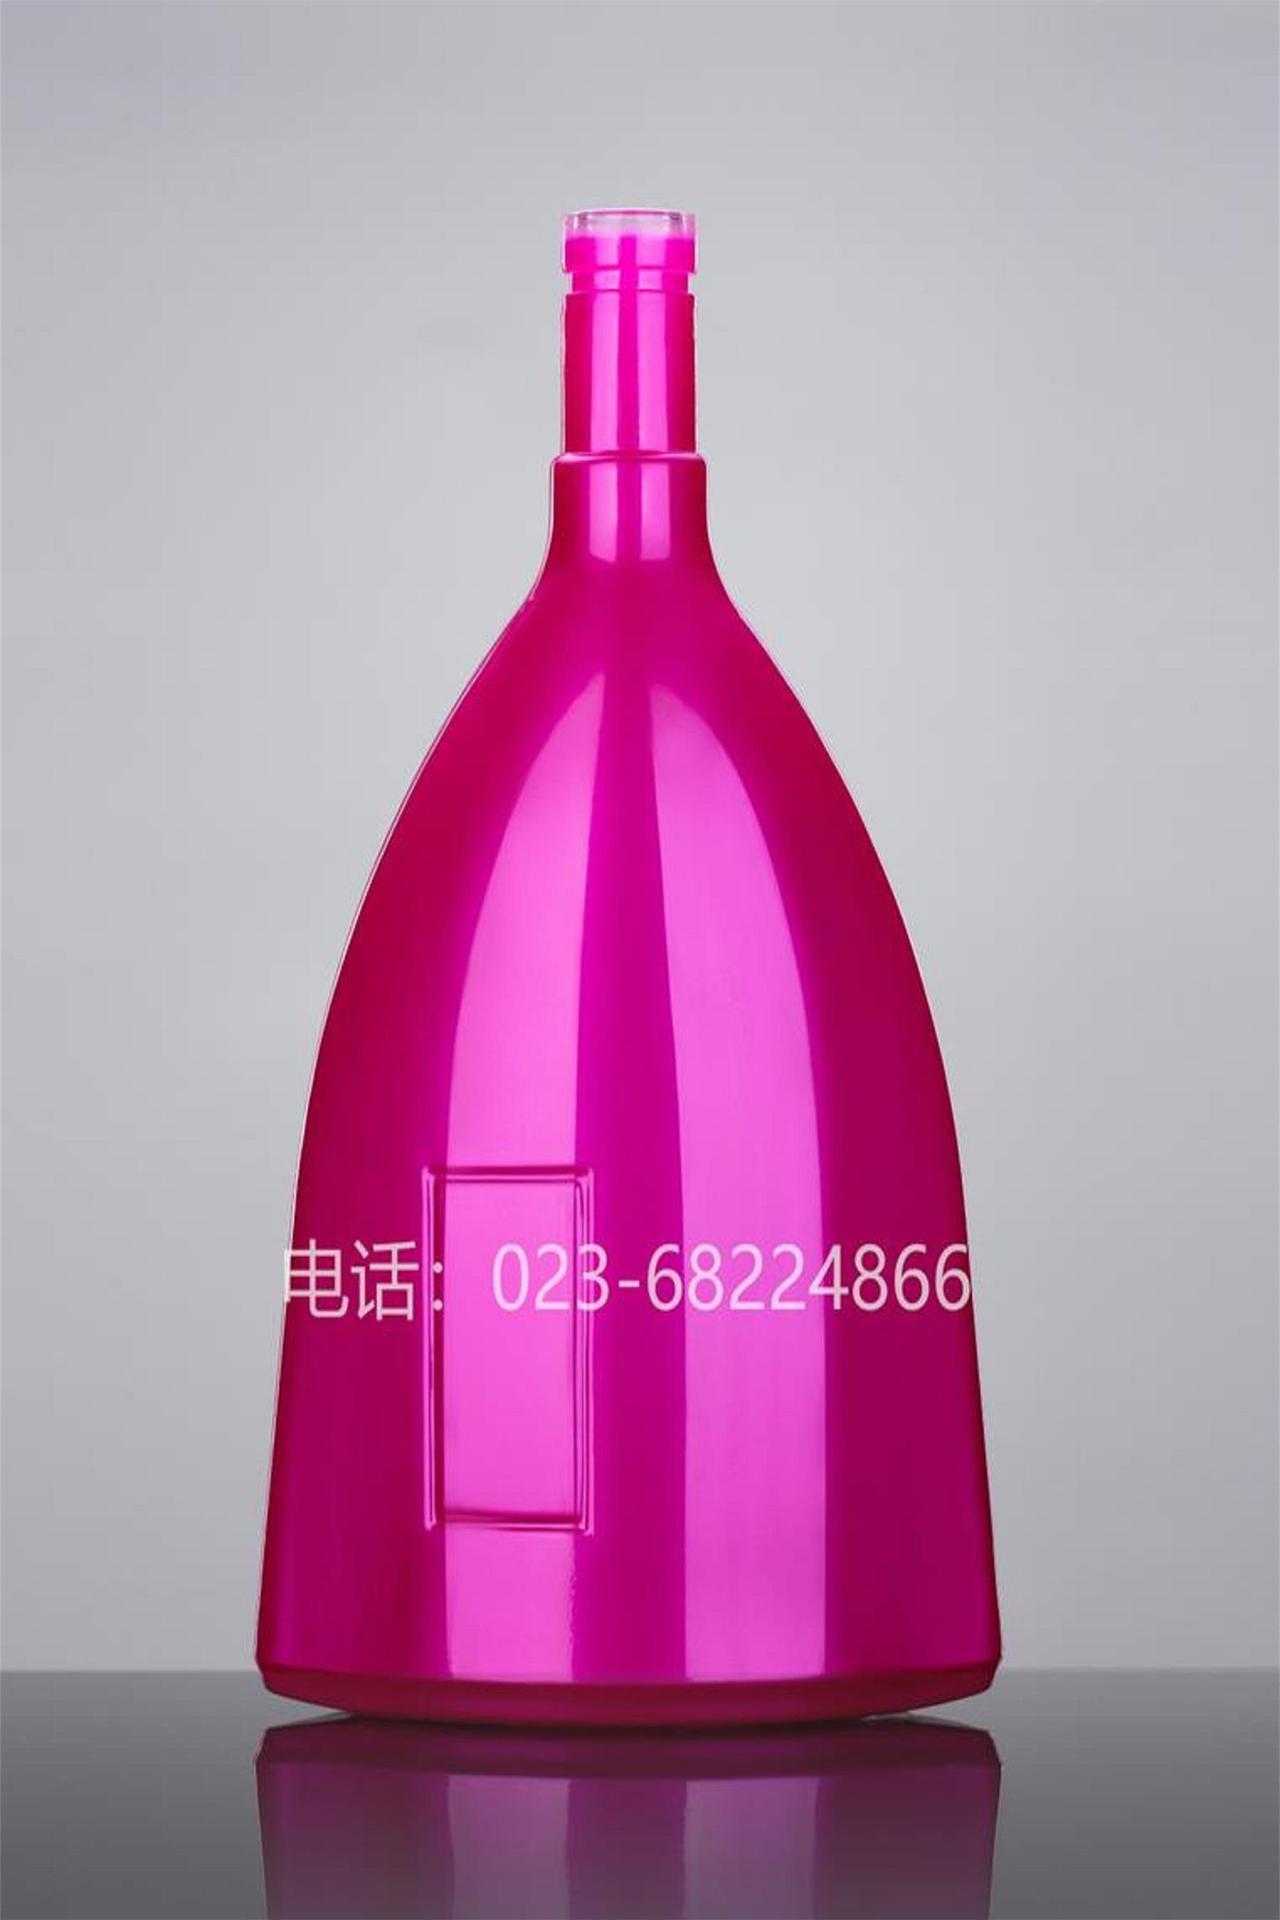 重庆恒晶玻璃HJ-Y042新款洋酒瓶1000ml /3000ml玻璃酒瓶